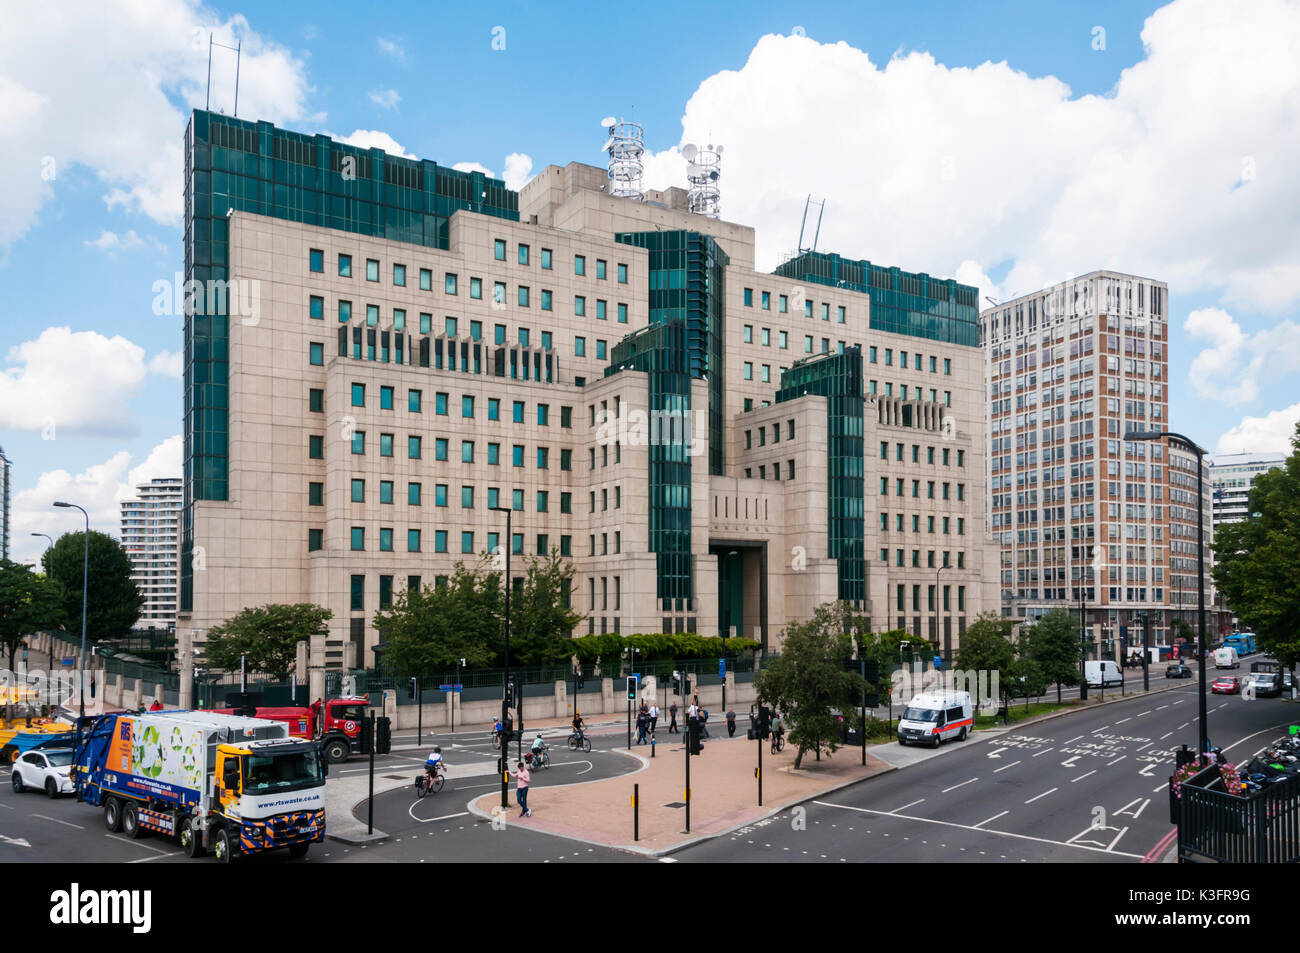 Le MI6, siège du Secret Intelligence Service à Vauxhall Cross, Londres du sud. Conçu par Terry Farrell. Banque D'Images